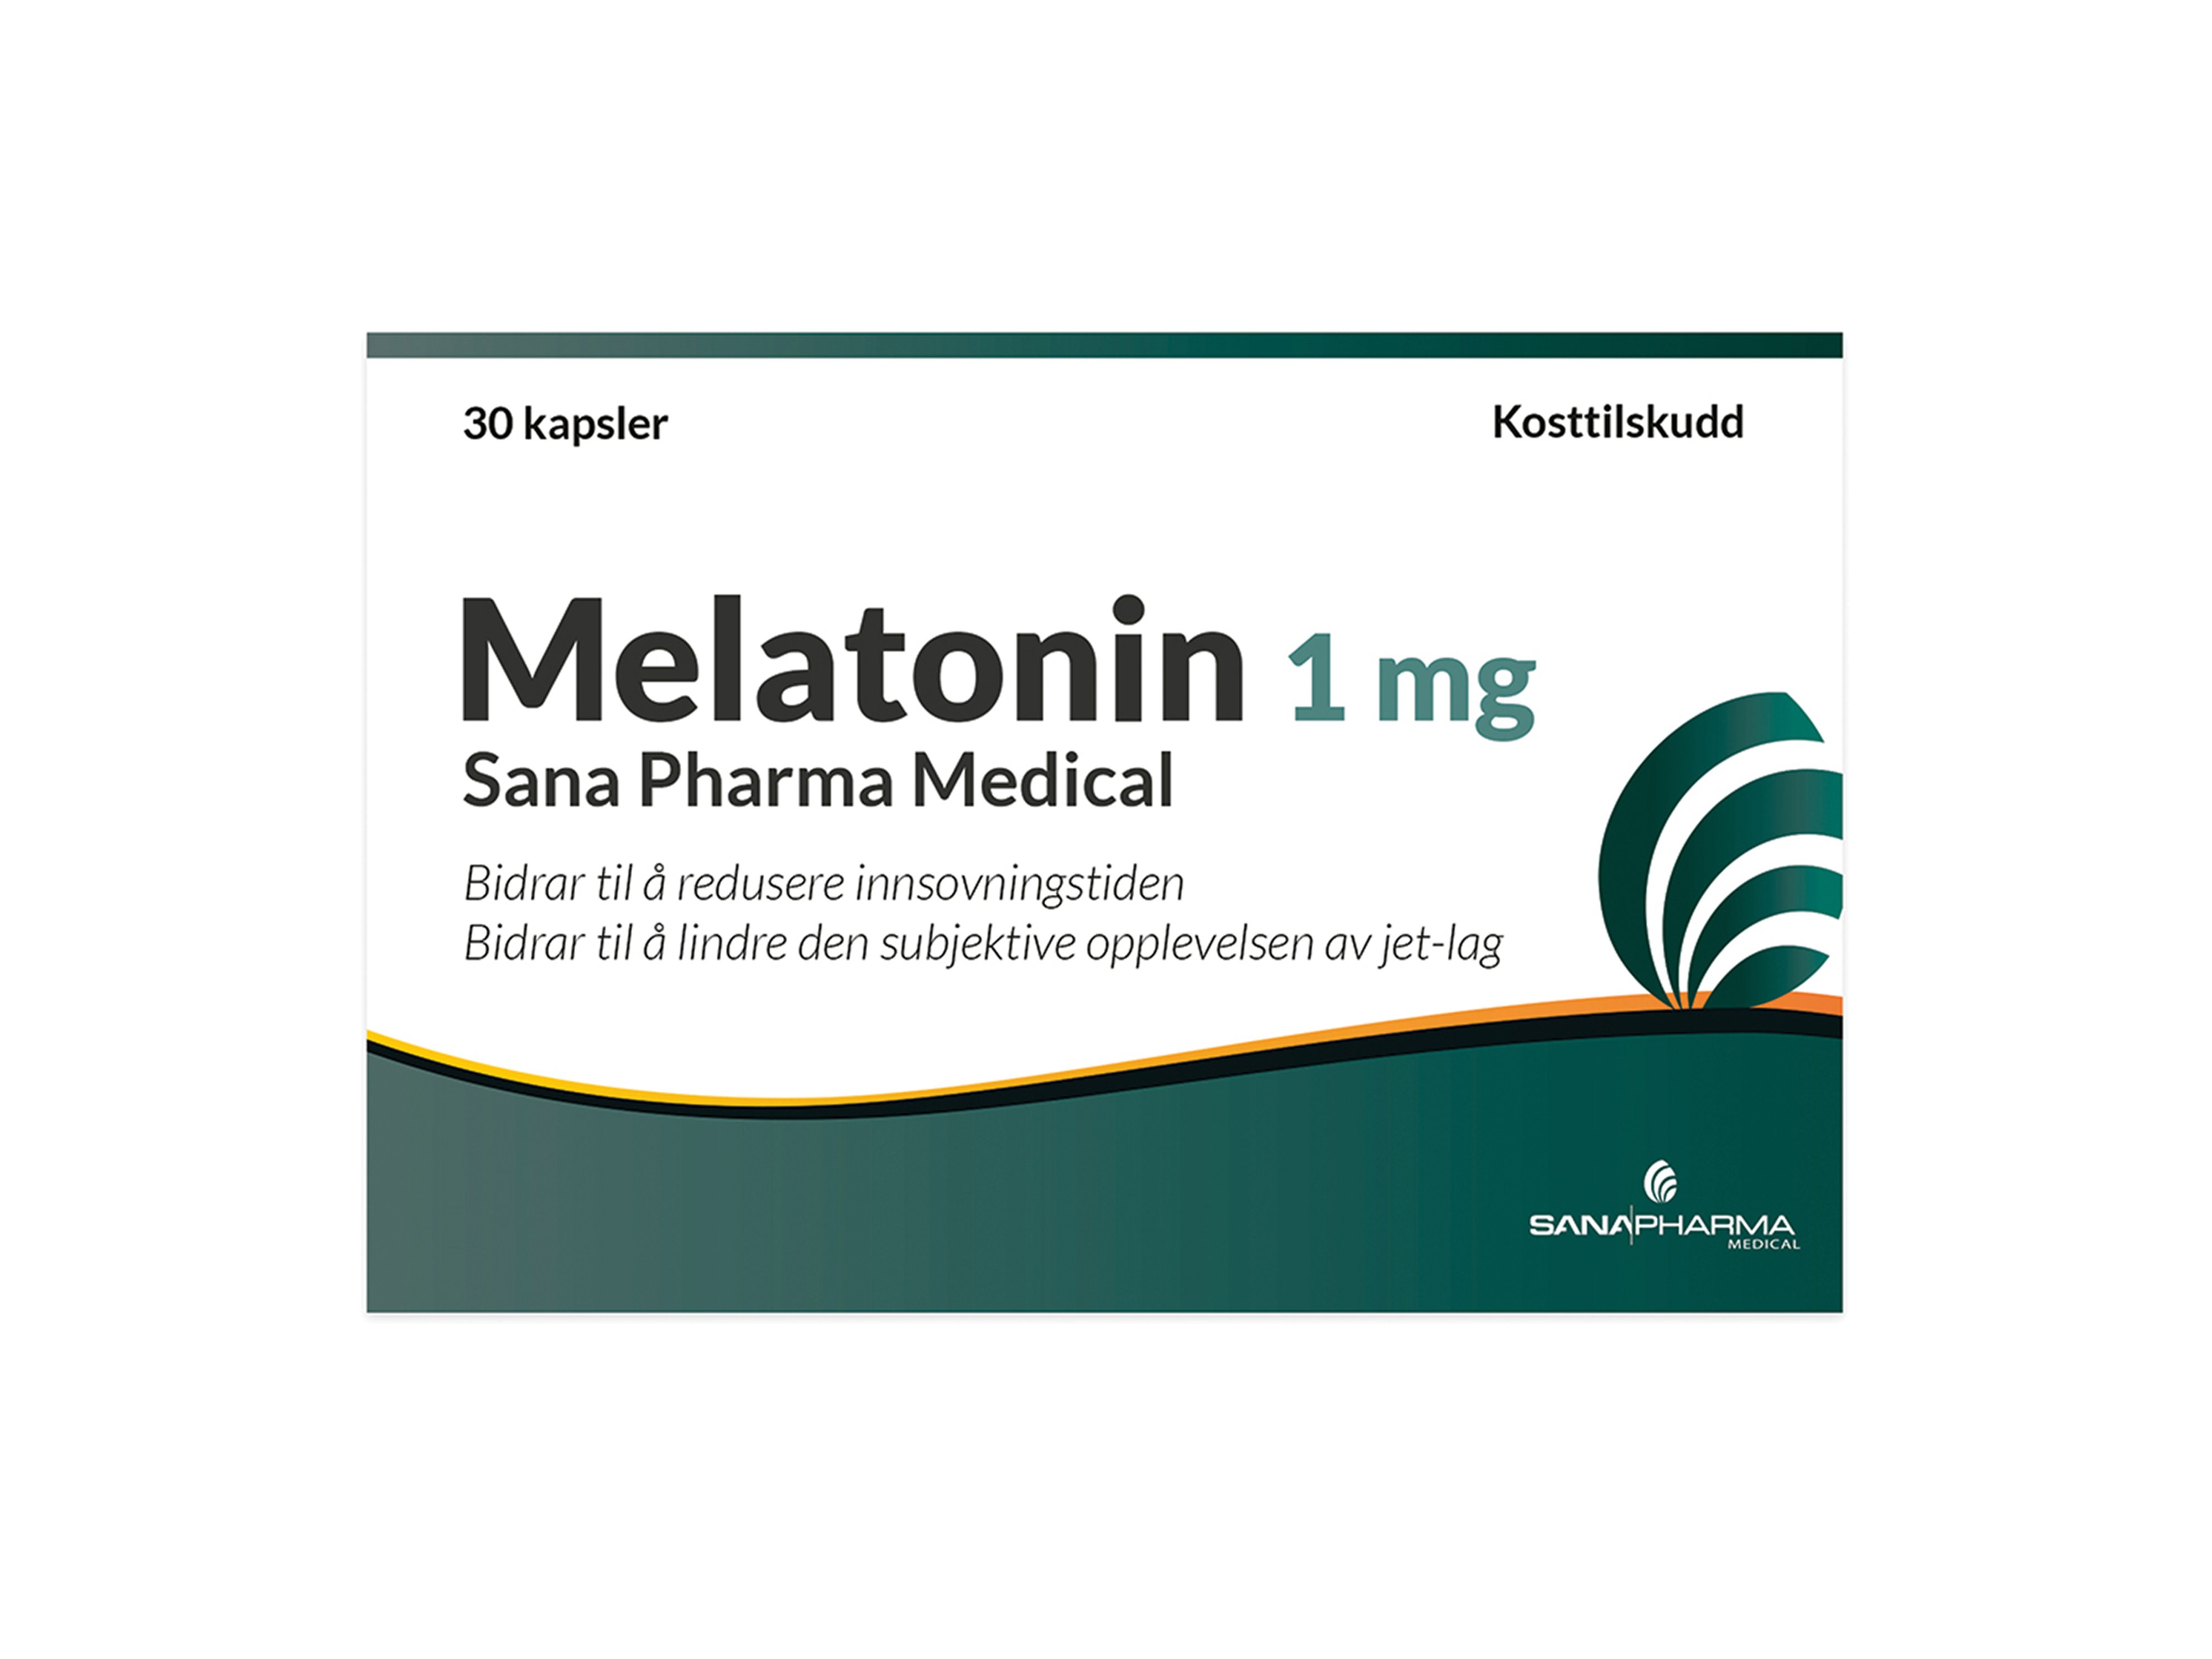 Sana Pharma Melatonin Kapsel 1 mg, 30 stk.